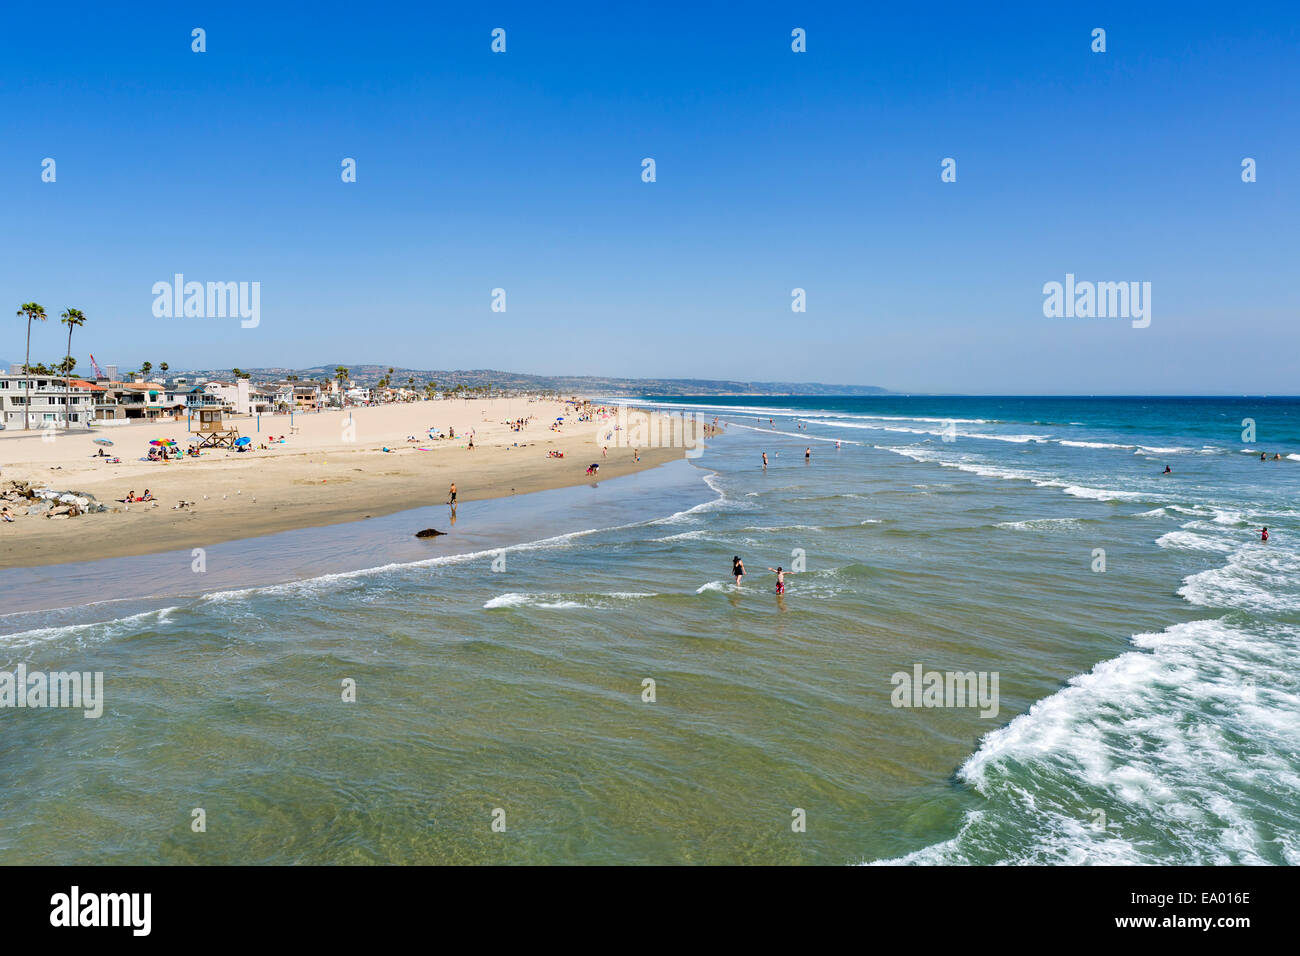 La plage de la jetée, la péninsule de Balboa, Newport Beach, Orange County, Californie, USA Banque D'Images